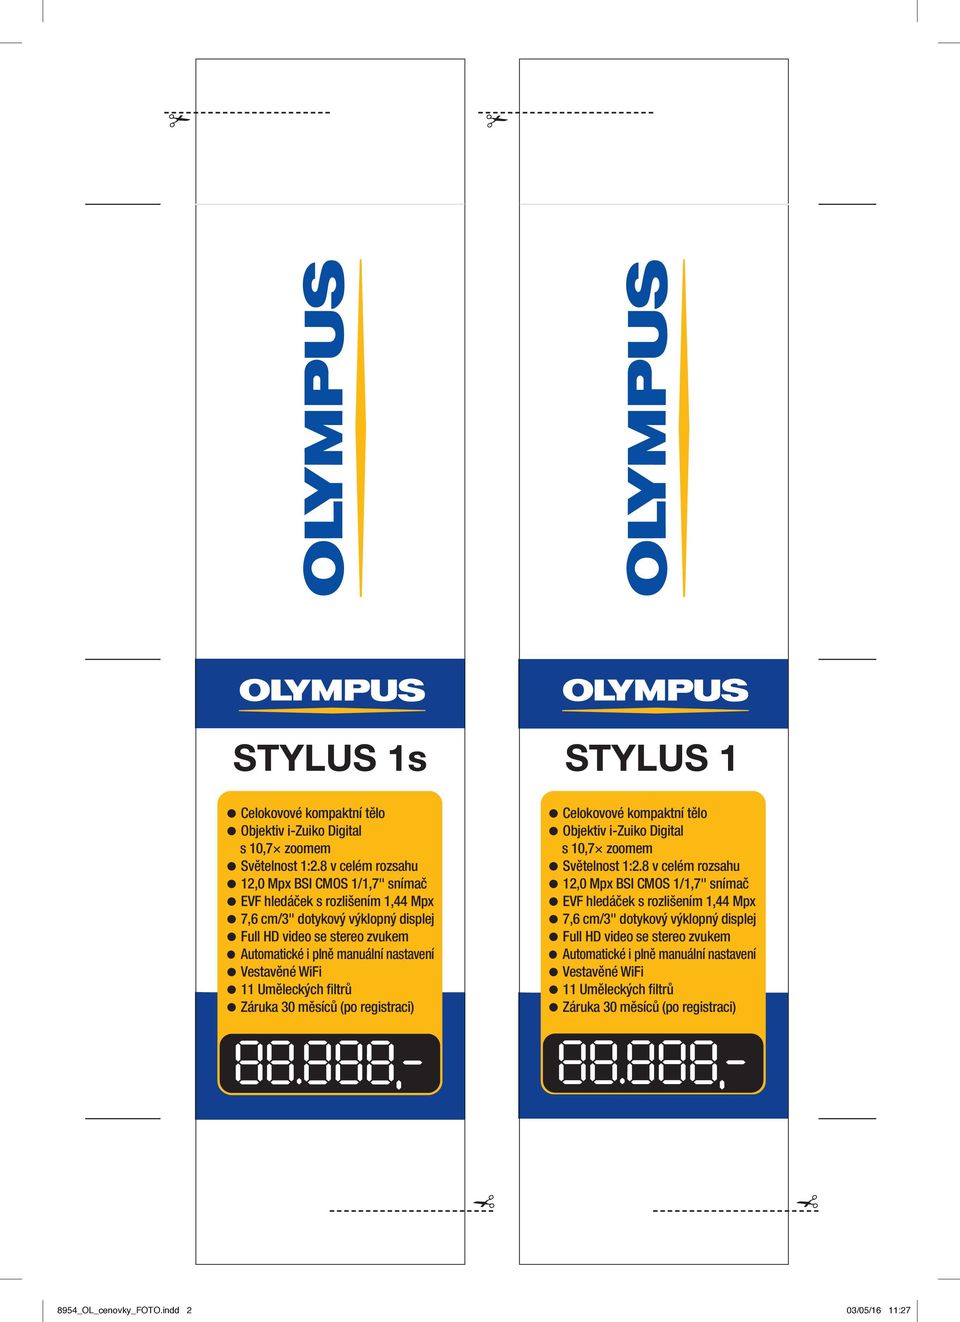 manuální nastavení 11 Uměleckých filtrů STYLUS 1 Celokovové kompaktní tělo Objektiv i-zuiko Digital s 10,7 zoomem Světelnost 1:2.